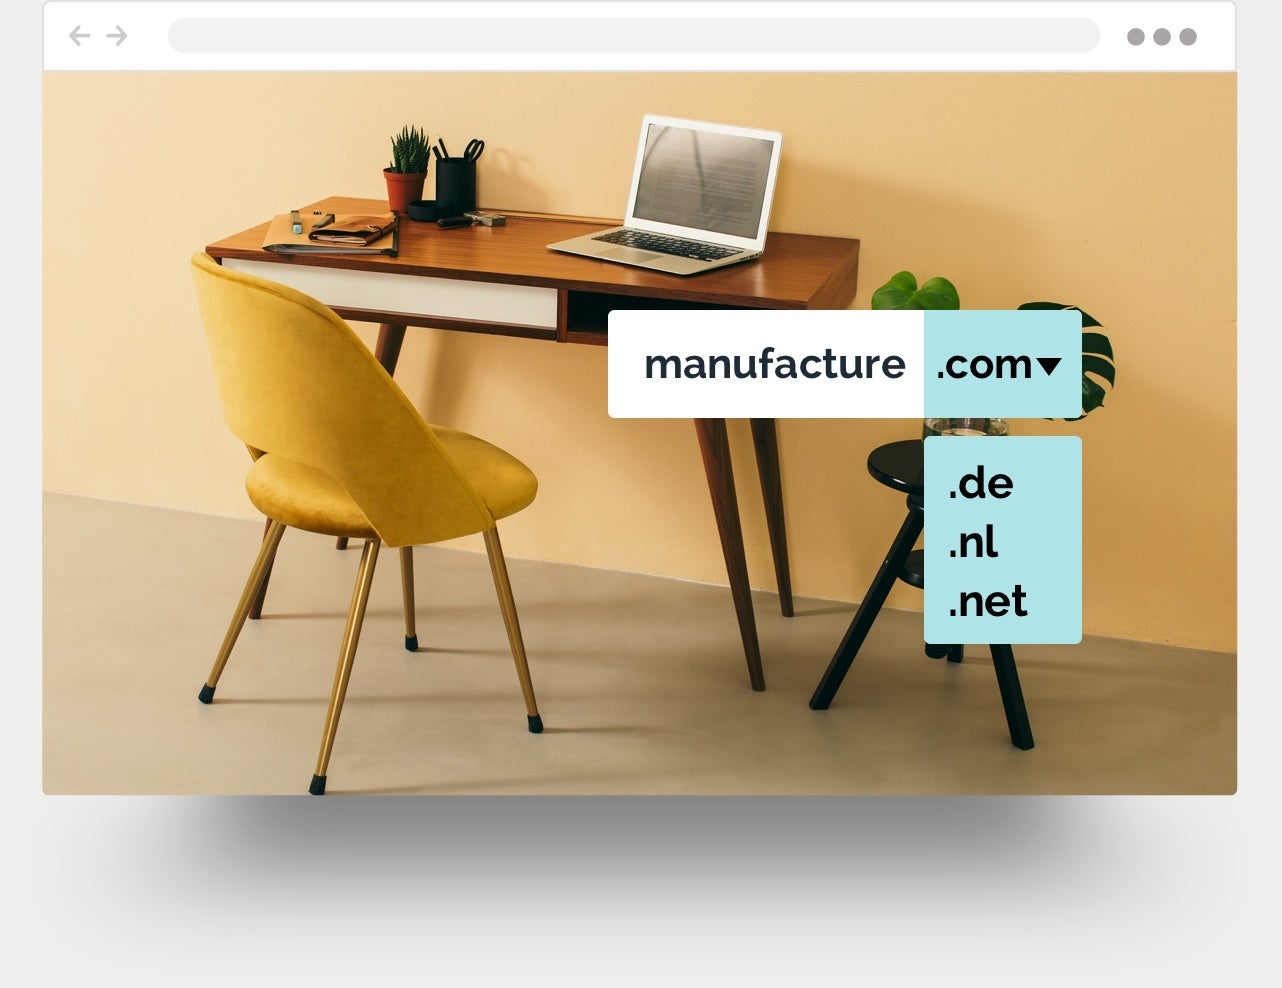 Ejemplo de una página web para muebles creada con Jimdo.